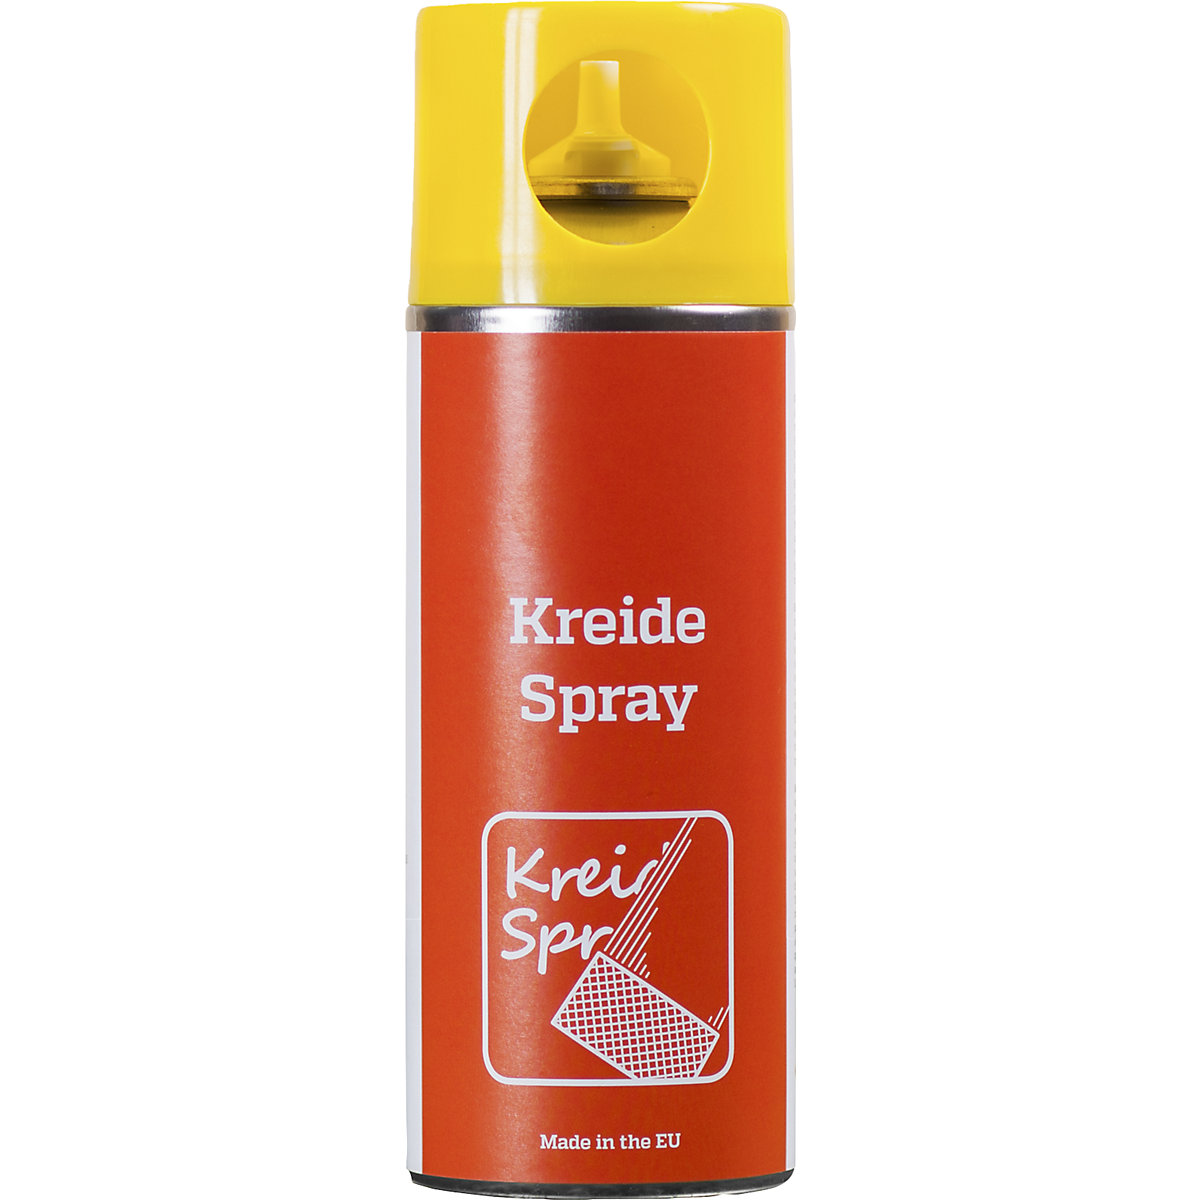 Kreidespray, Inhalt 400 ml, VE 6 Stk, gelb, ab 5 VE